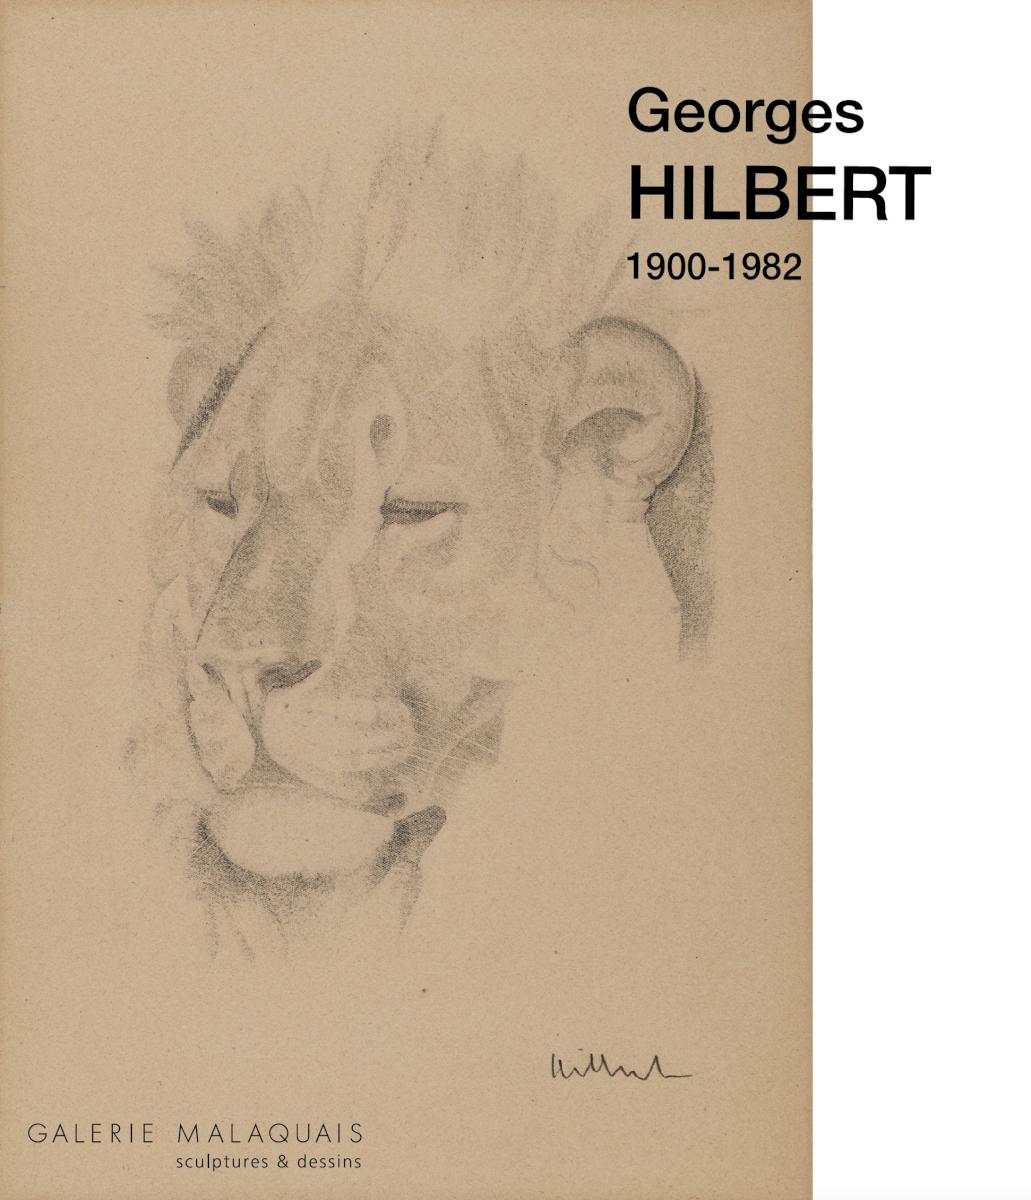 Georges HILBERT - catalogue numérique